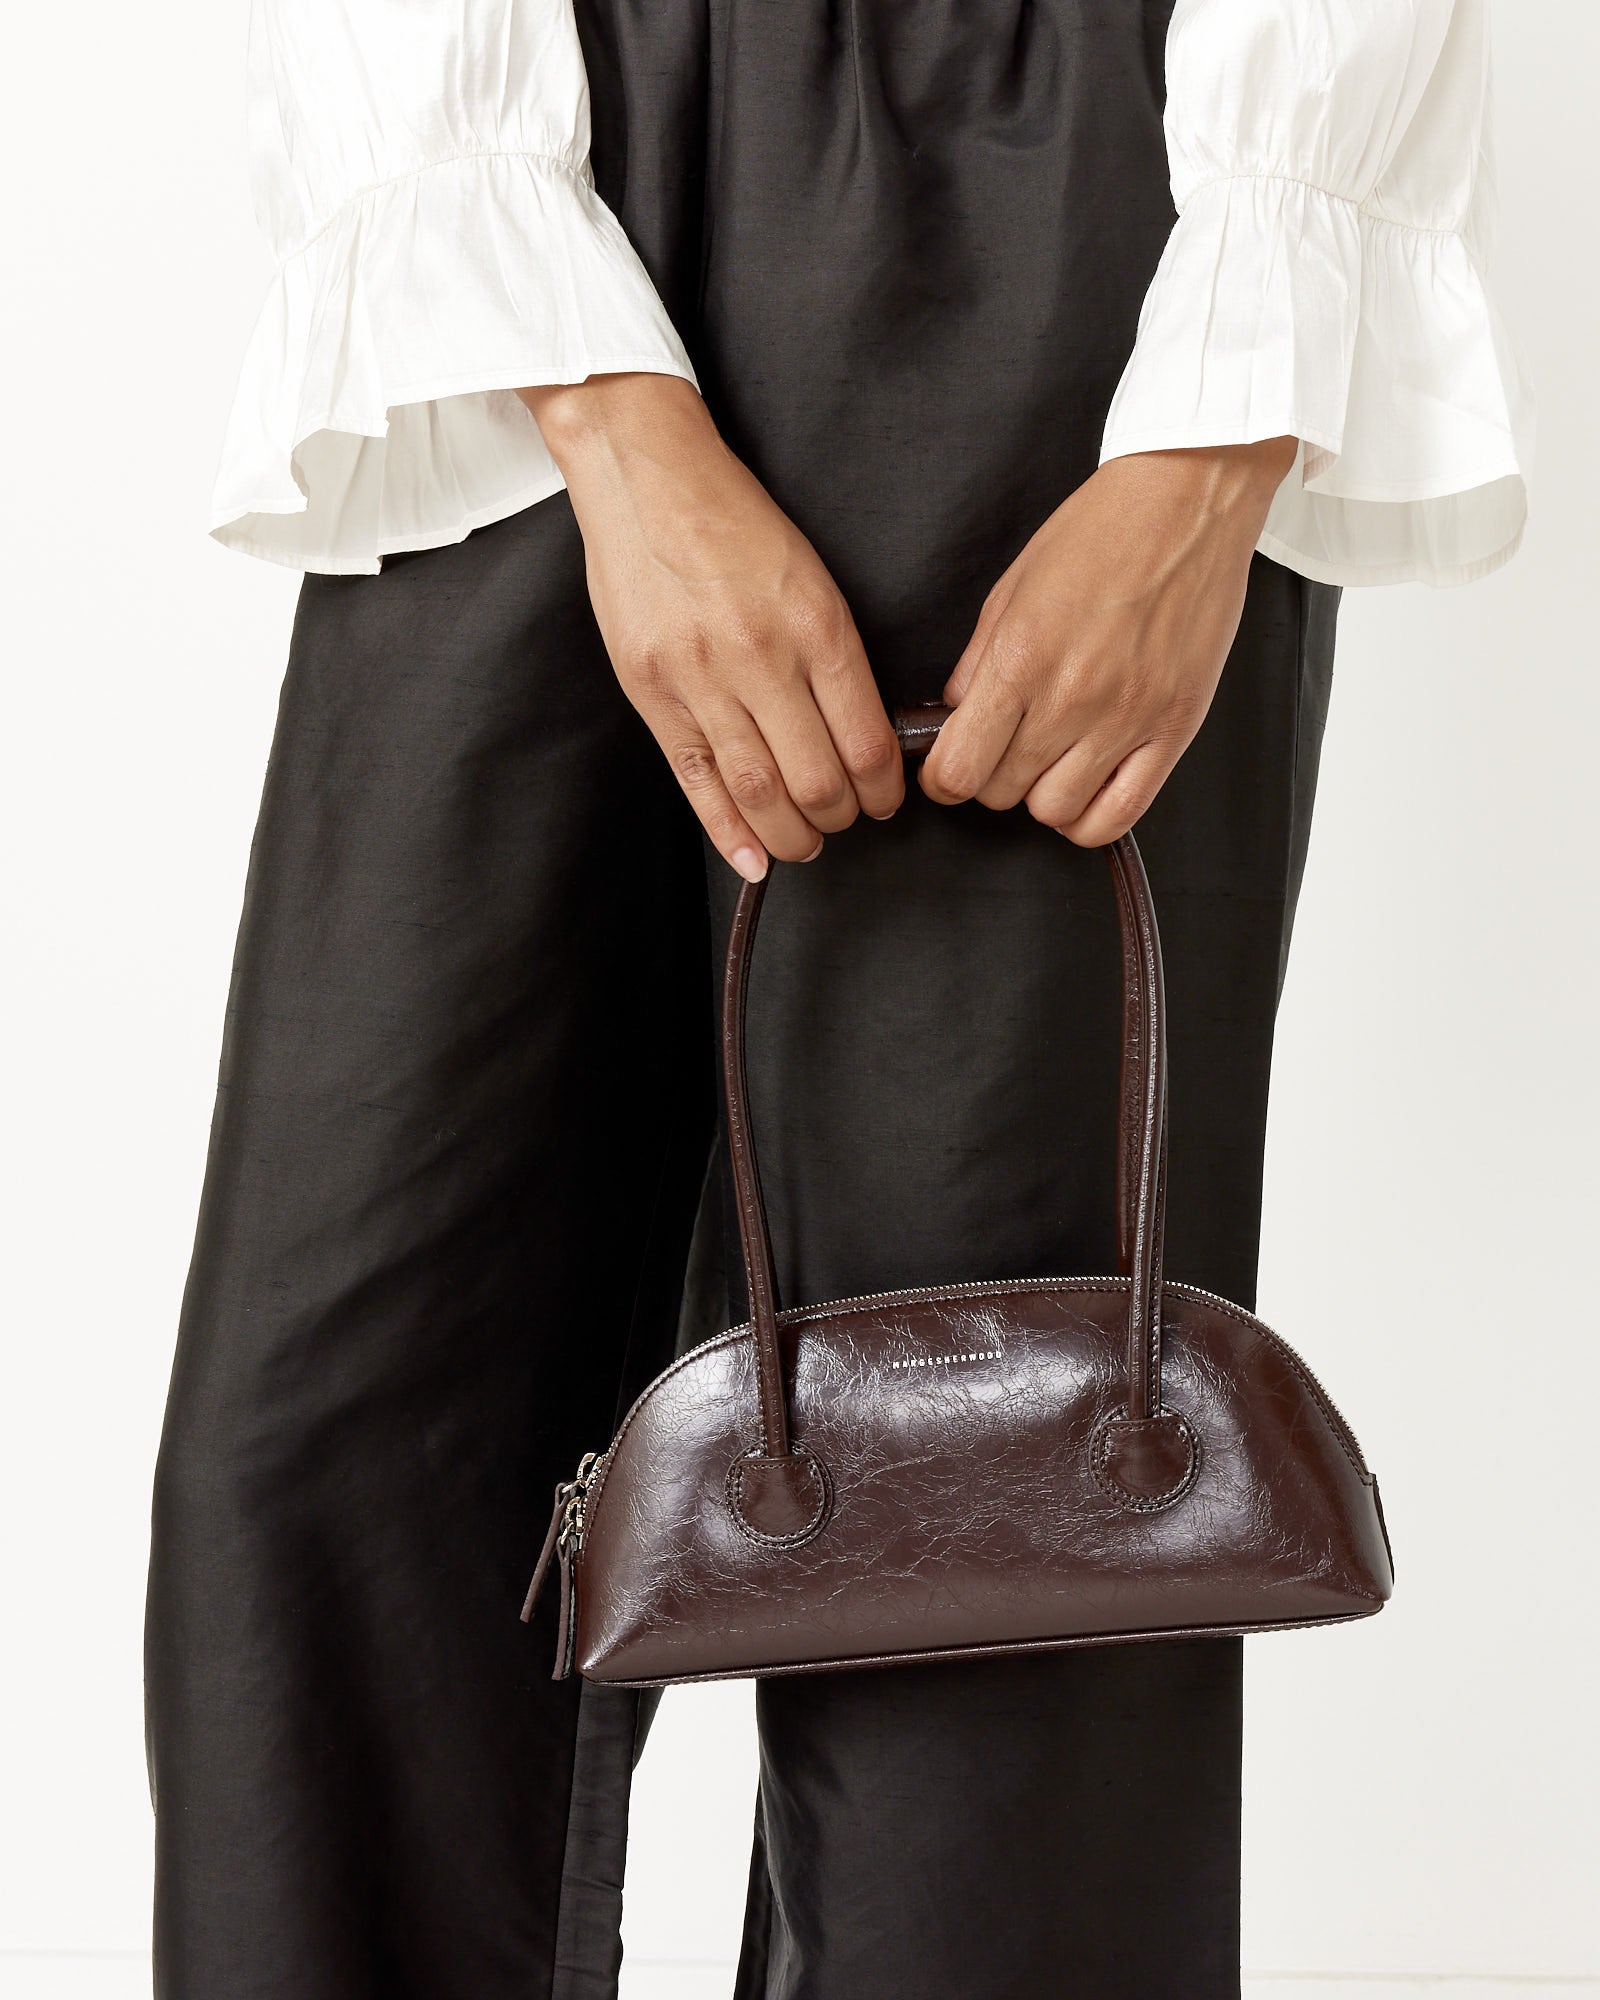 MARGE SHERWOOD - Bessette leather shoulder bag